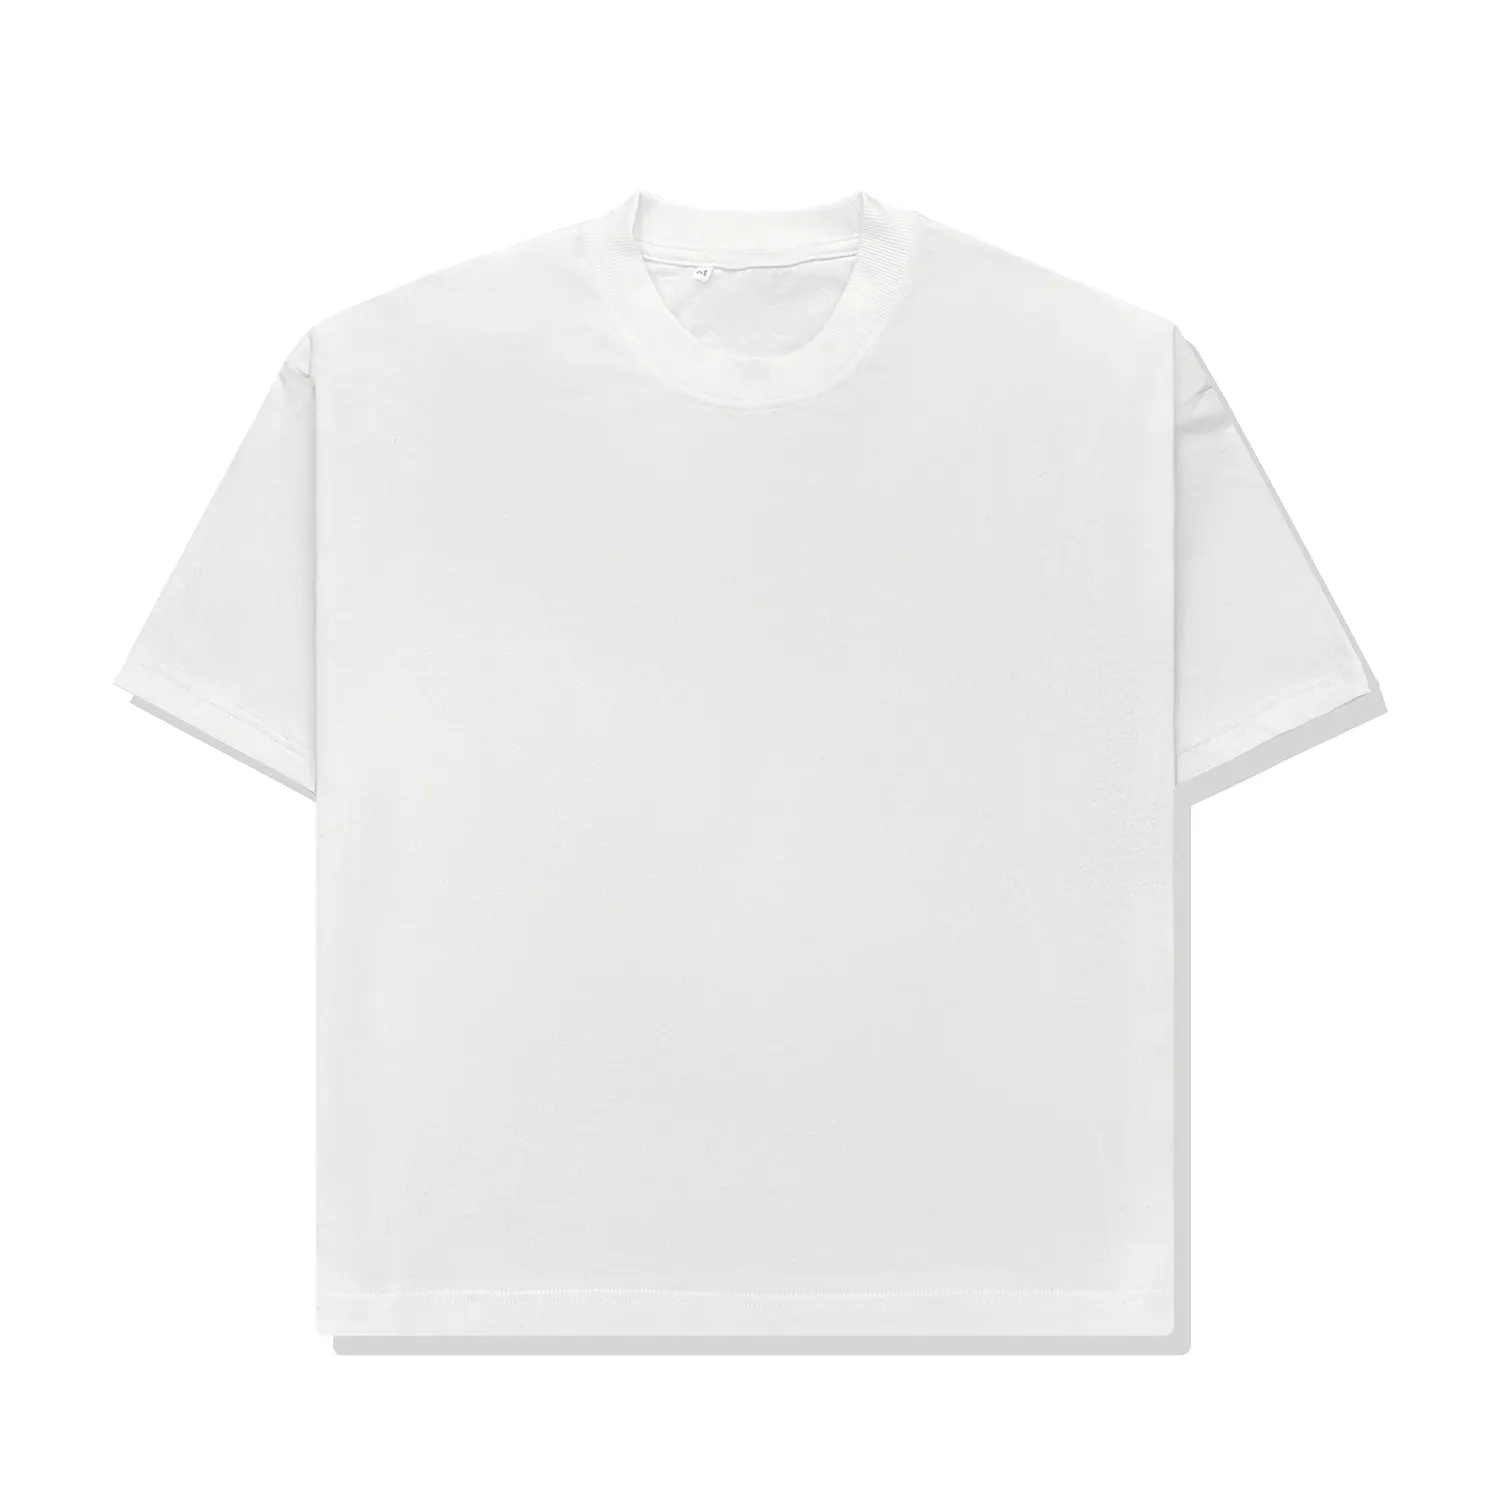 T-shirt blanc imprimé en boîte vierge avec impression graphique personnalisée du fabricant 300GSM T-shirt blanc lourd T-shirt surdimensionné Boxy Fit Crop T-shirt pour hommes